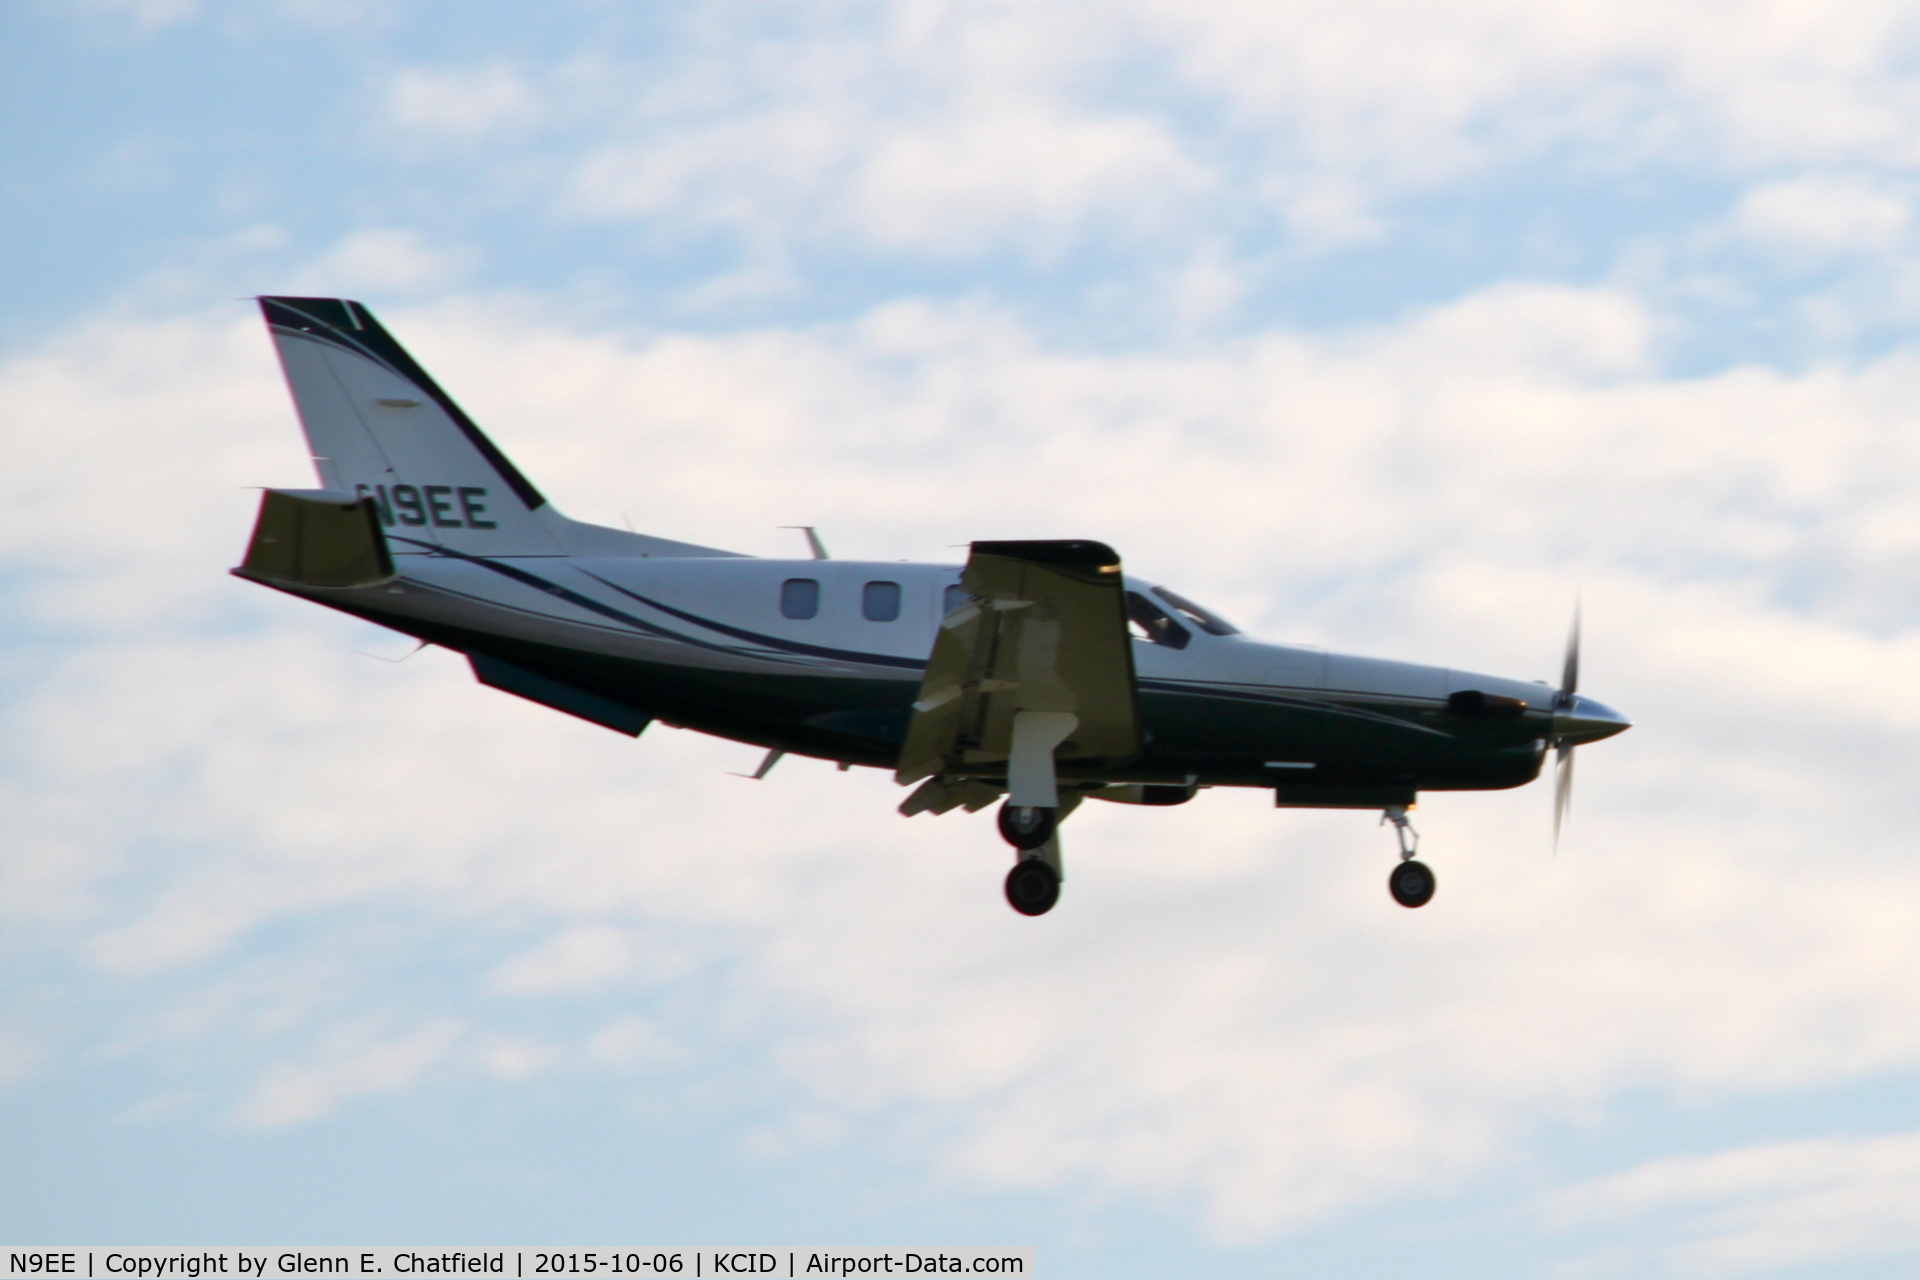 N9EE, 2003 Socata TBM-700 C/N 286, Final approach runway 27